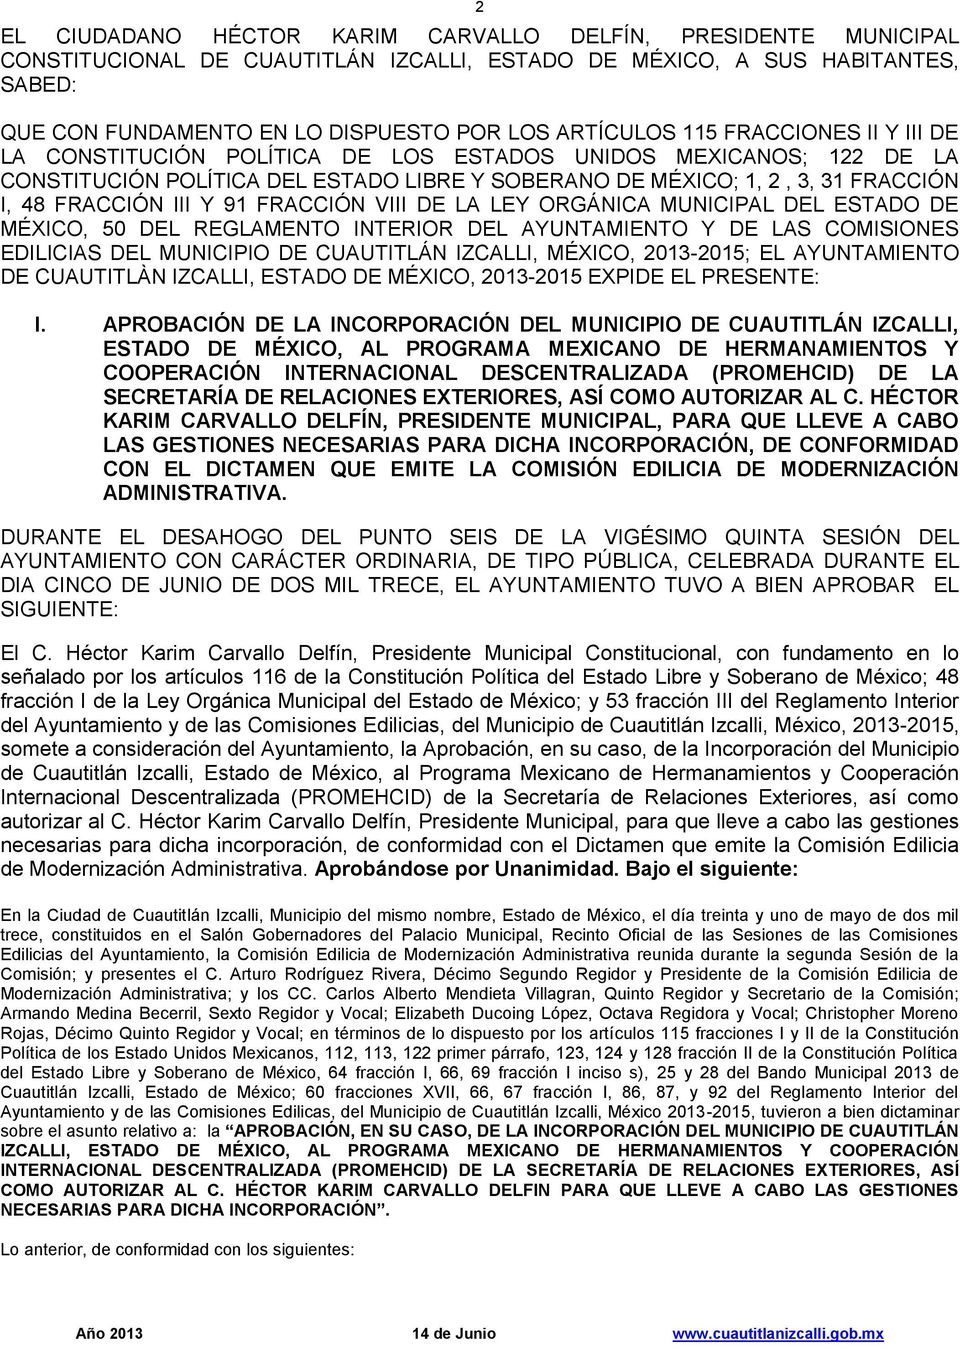 91 FRACCIÓN VIII DE LA LEY ORGÁNICA MUNICIPAL DEL ESTADO DE MÉXICO, 50 DEL REGLAMENTO INTERIOR DEL AYUNTAMIENTO Y DE LAS COMISIONES EDILICIAS DEL MUNICIPIO DE CUAUTITLÁN IZCALLI, MÉXICO, 2013-2015;